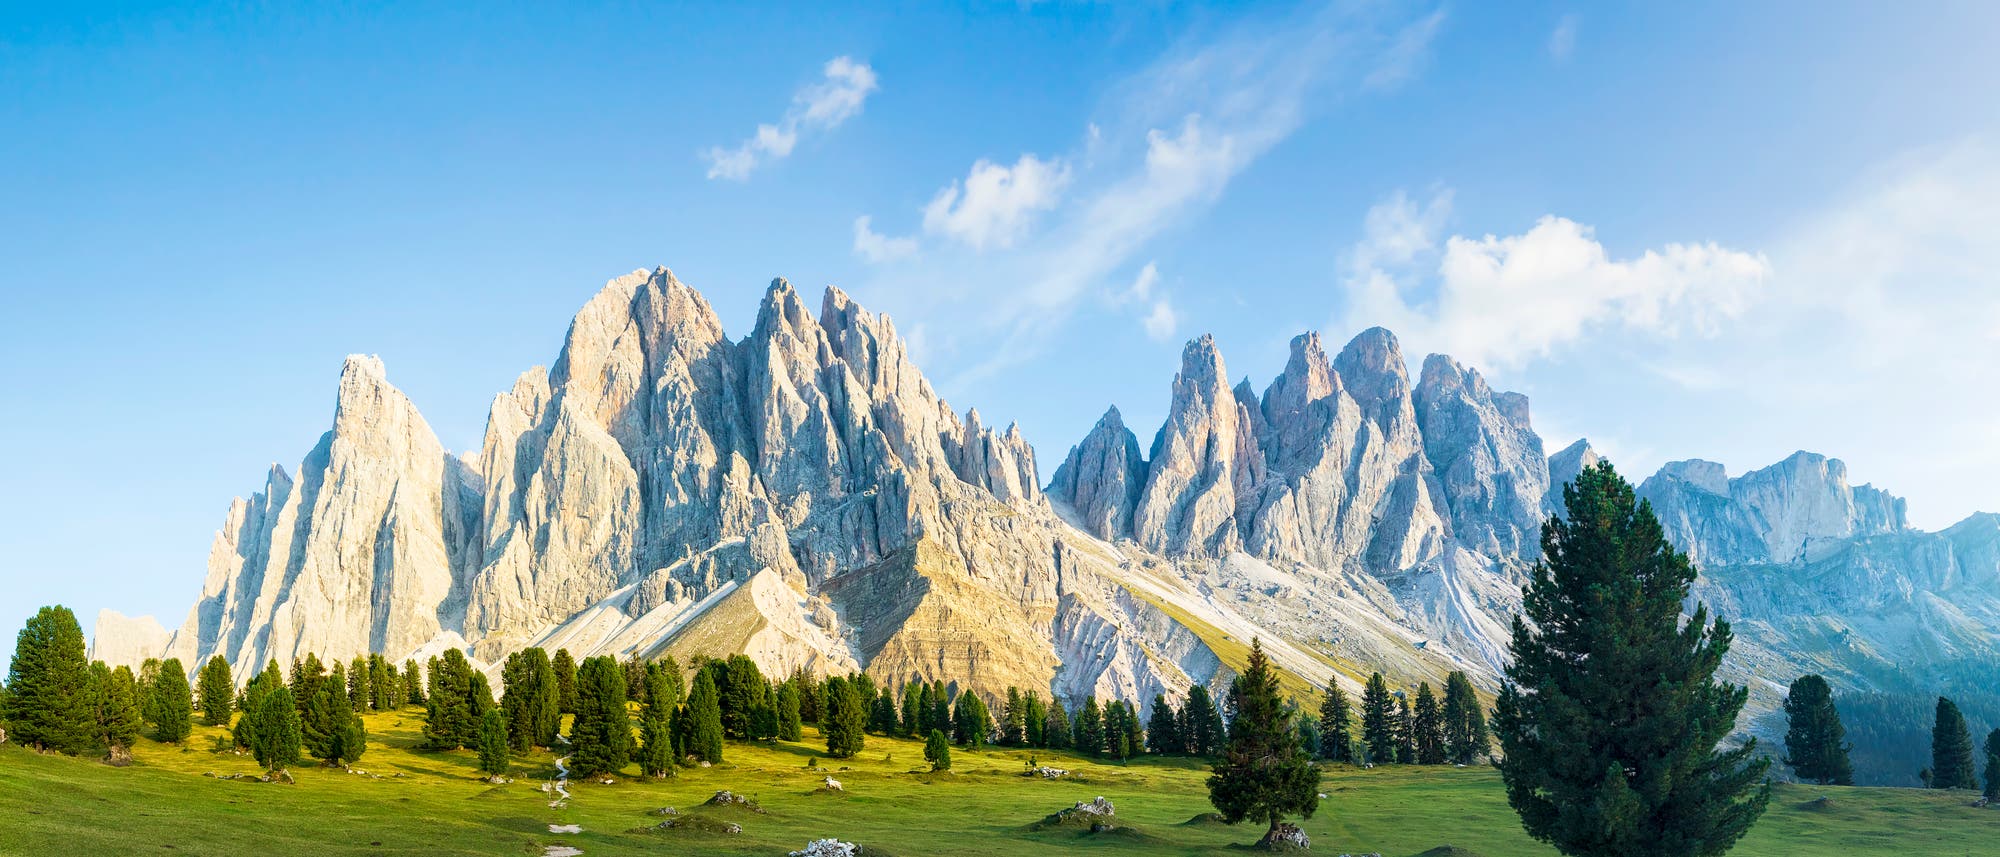 Steile Felszacken aus hellem Gestein über grüner Wiesenlandschaft, Geisler Gruppe in den Dolomiten.